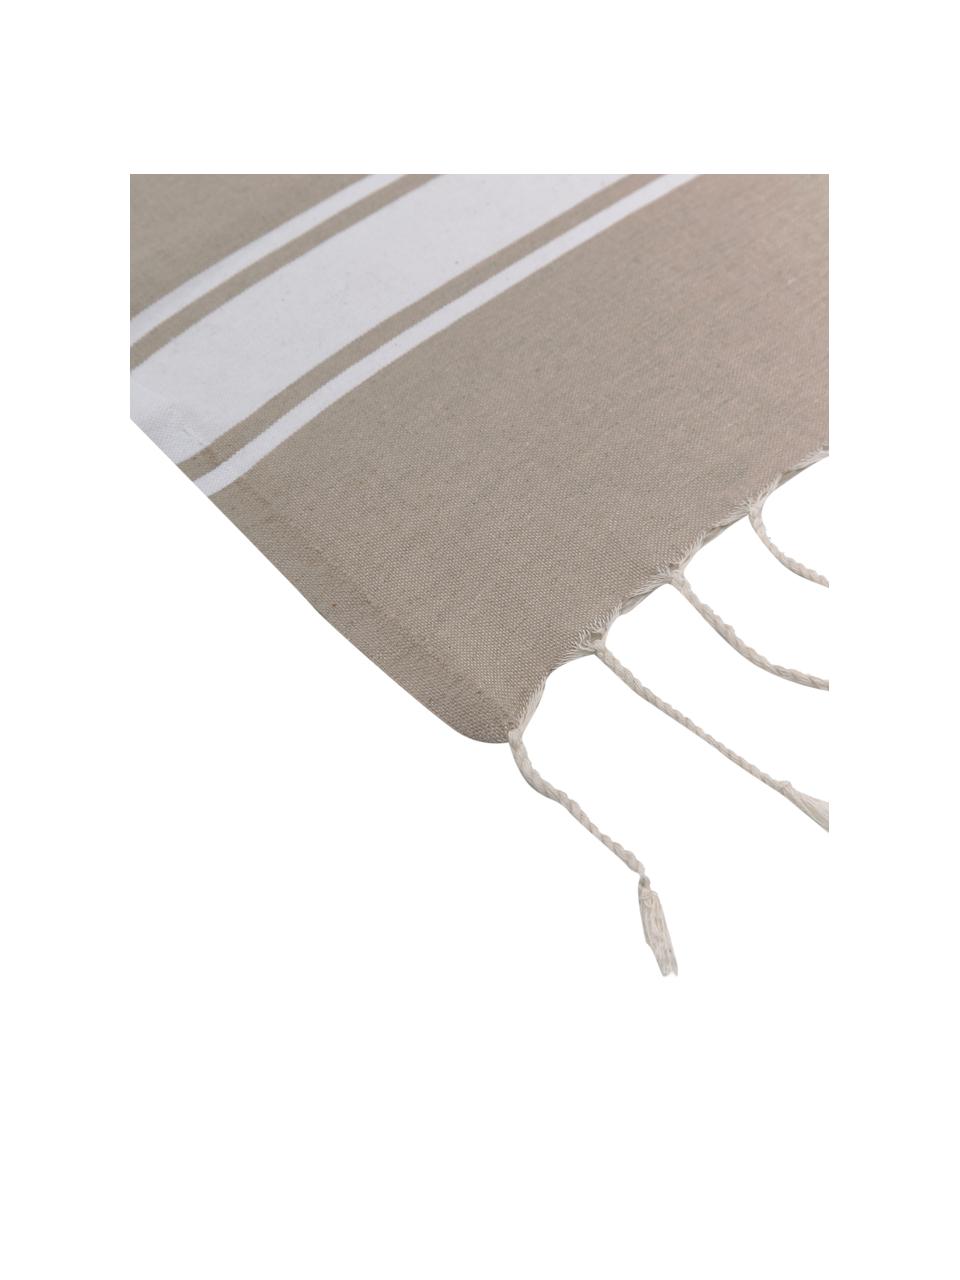 Hamamtuch St Tropez mit Streifen und Fransen, 100% Baumwolle, Beige, Weiß, B 100 x L 200 cm